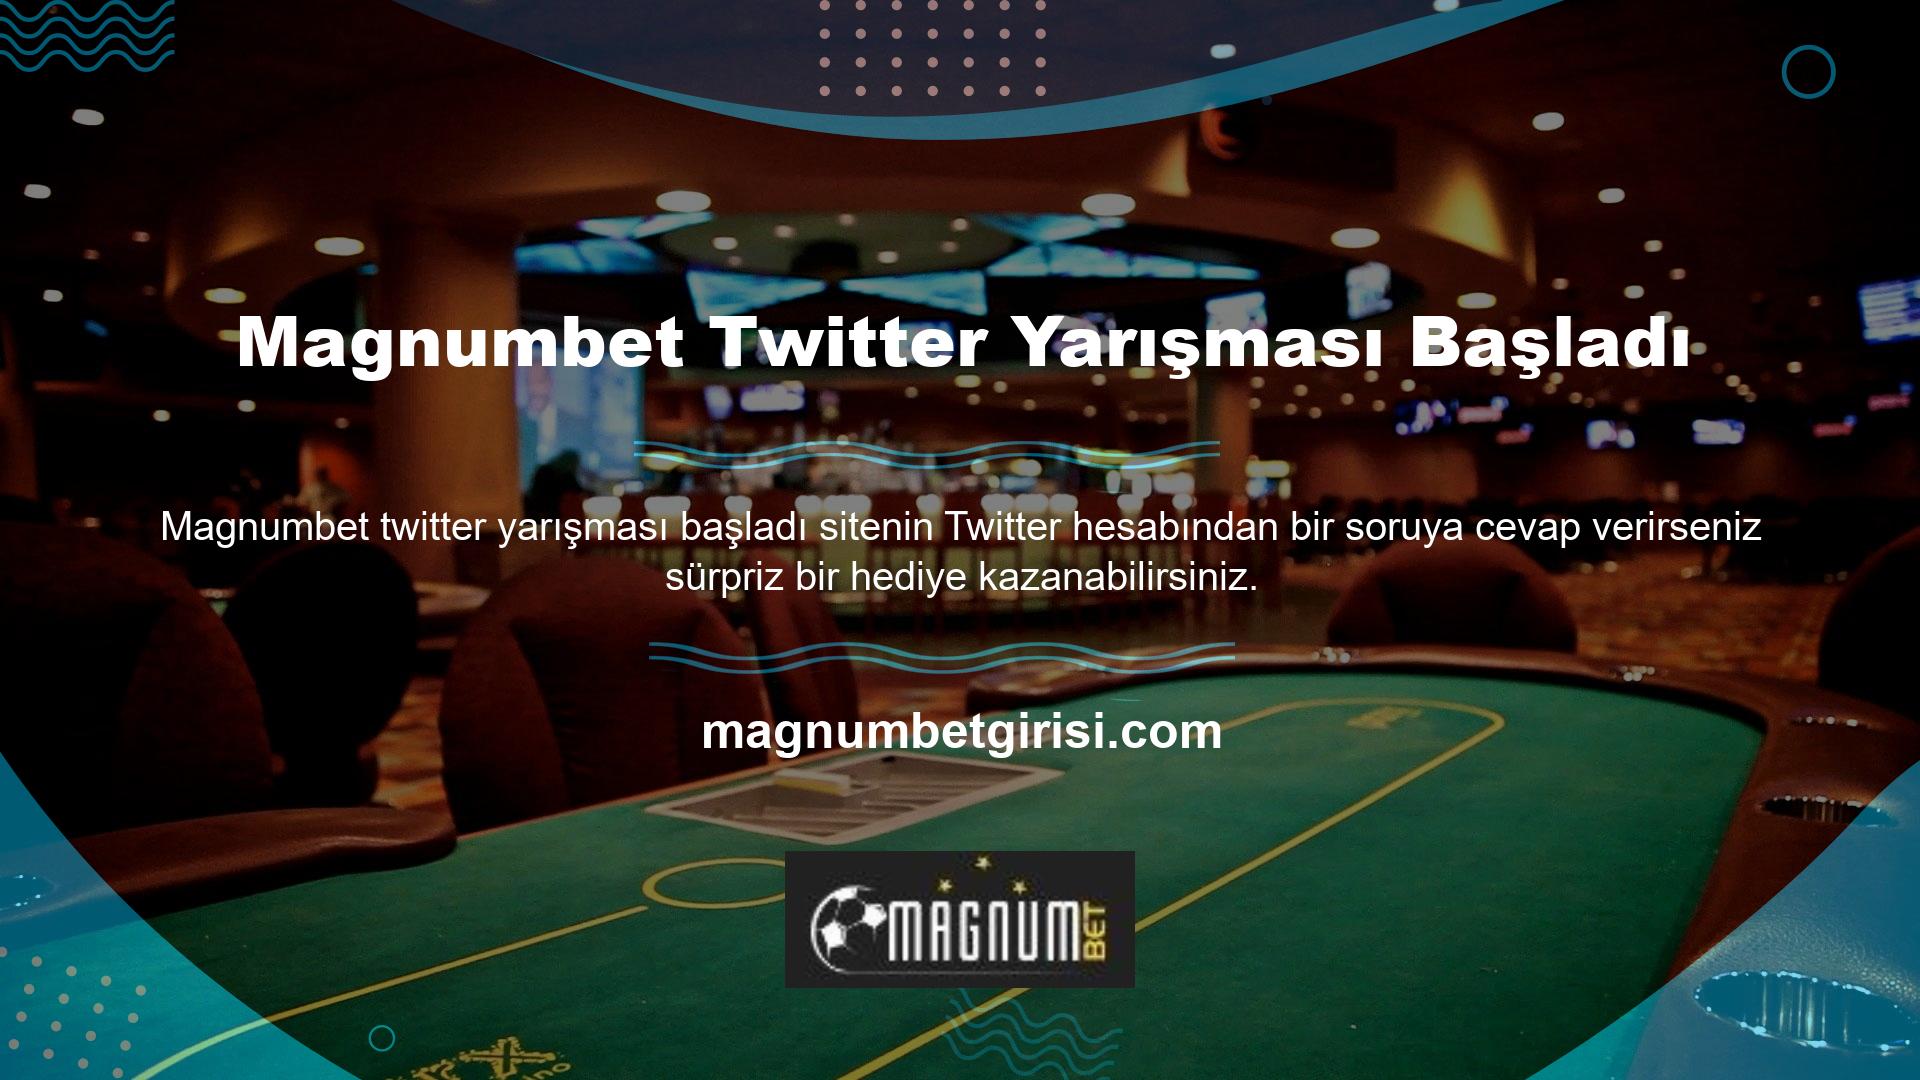 Twitter yarışmasına katılmak için Magnumbet Twitter hesabını takip etmeniz gerekmektedir